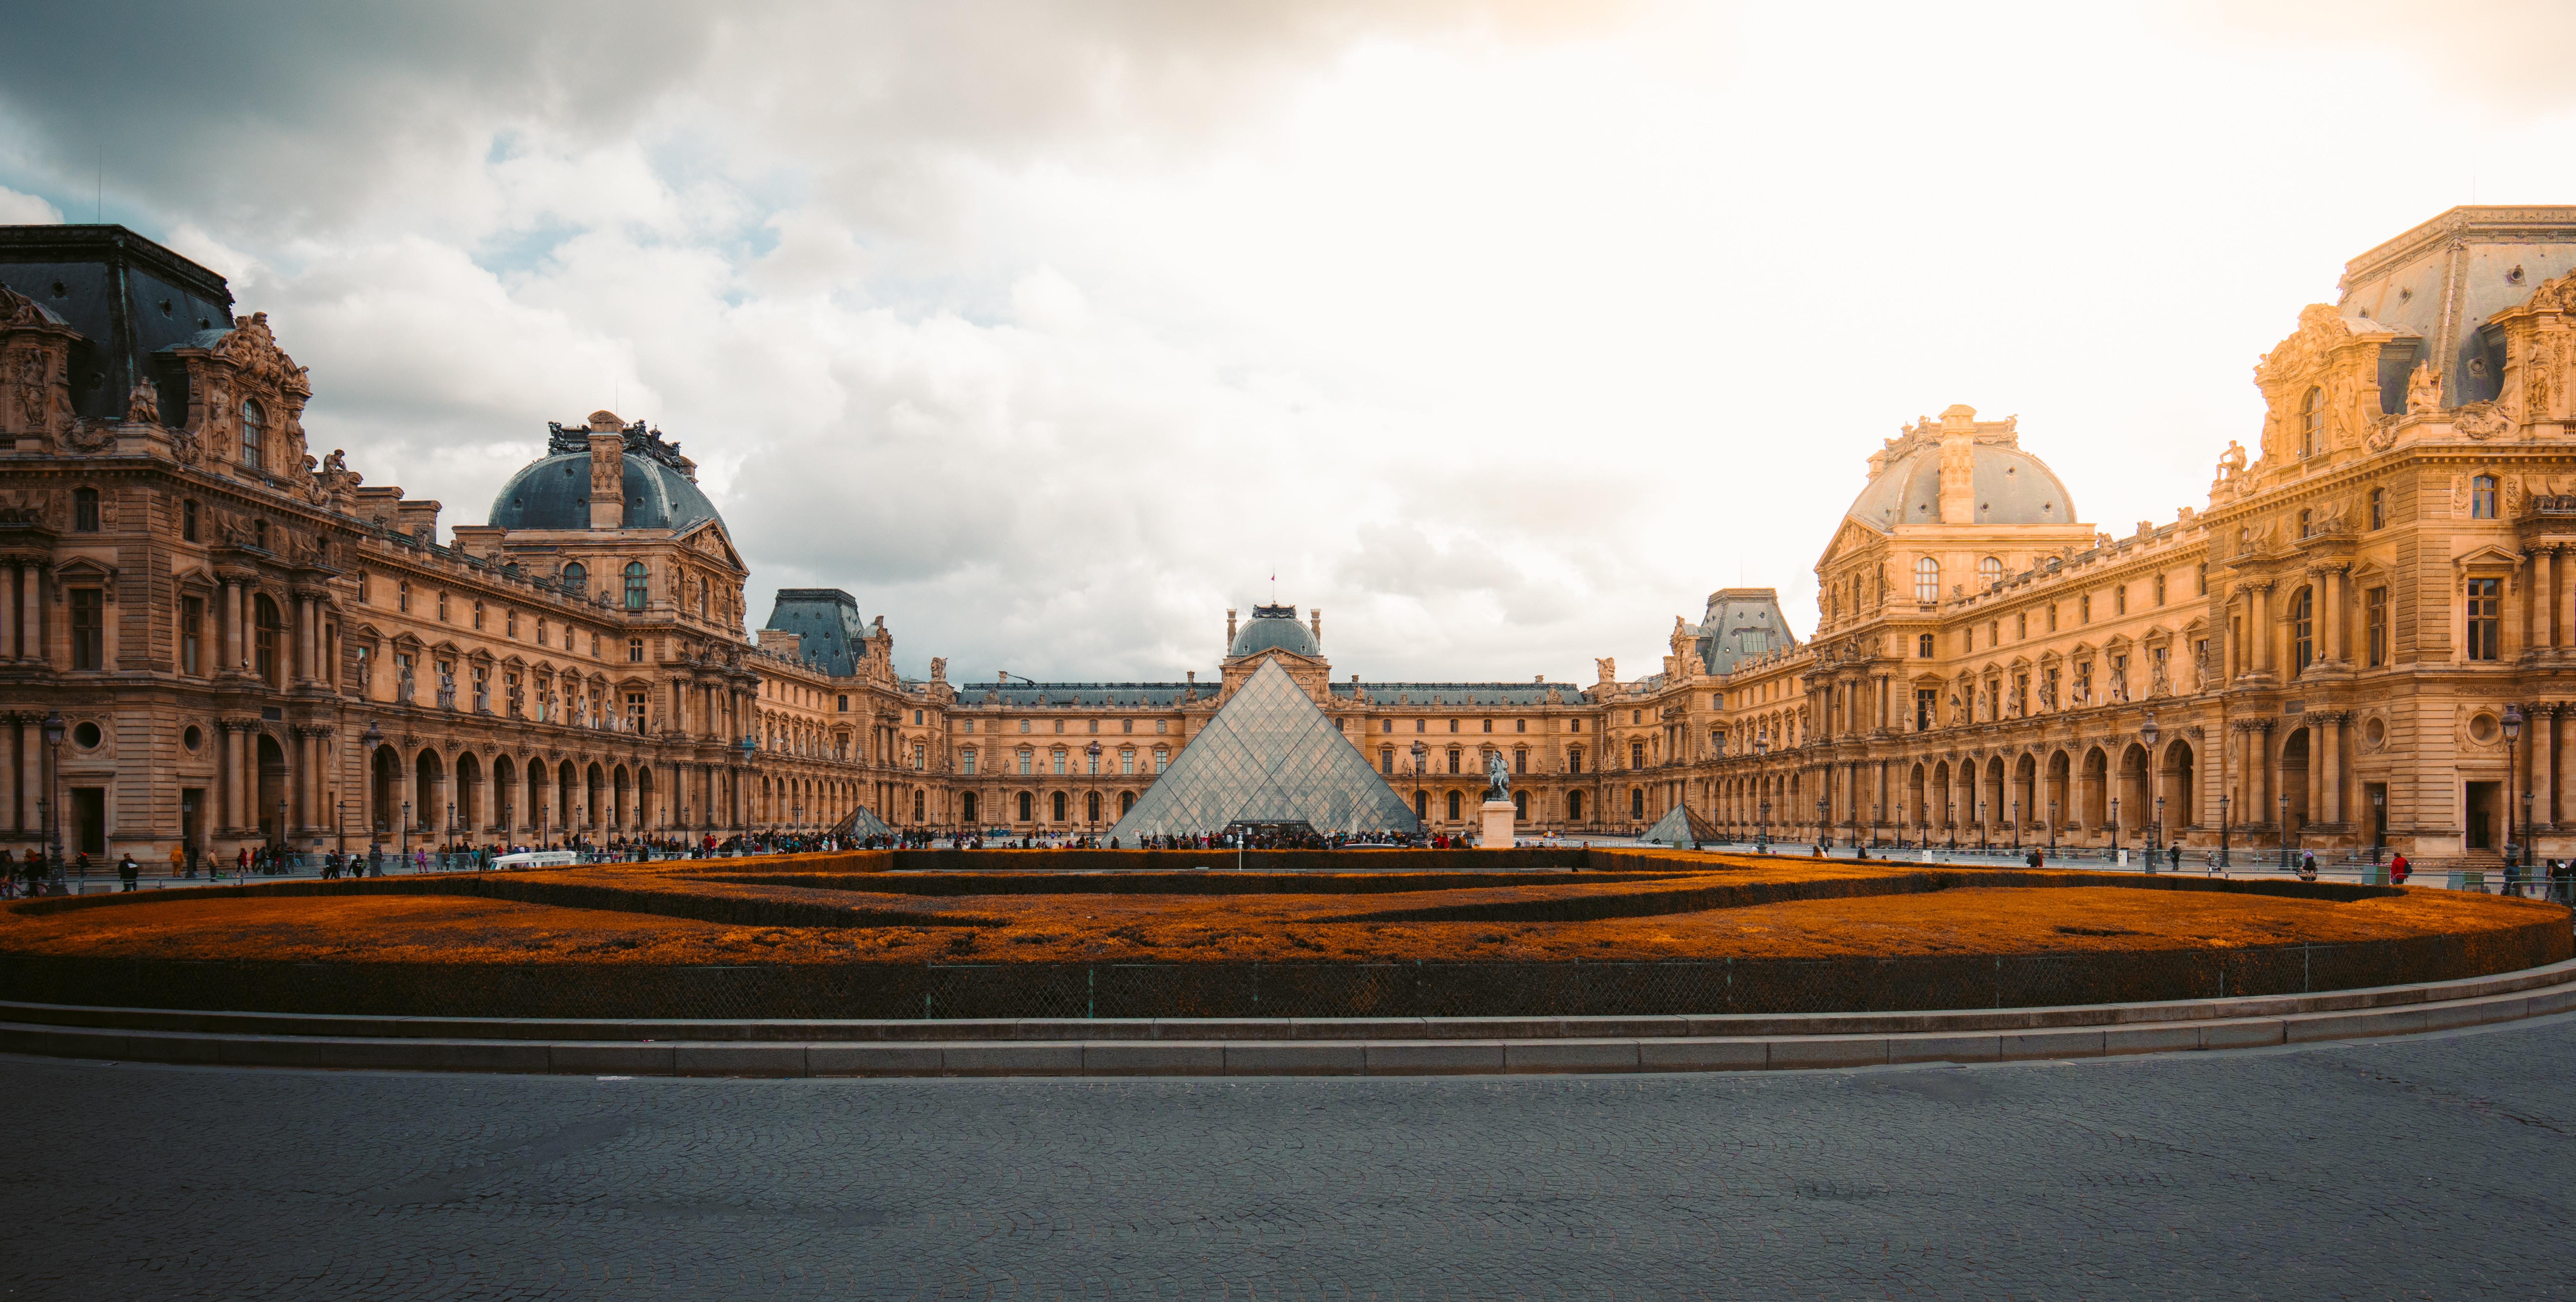 Le Musée du Louvre fête ses 230 ans !